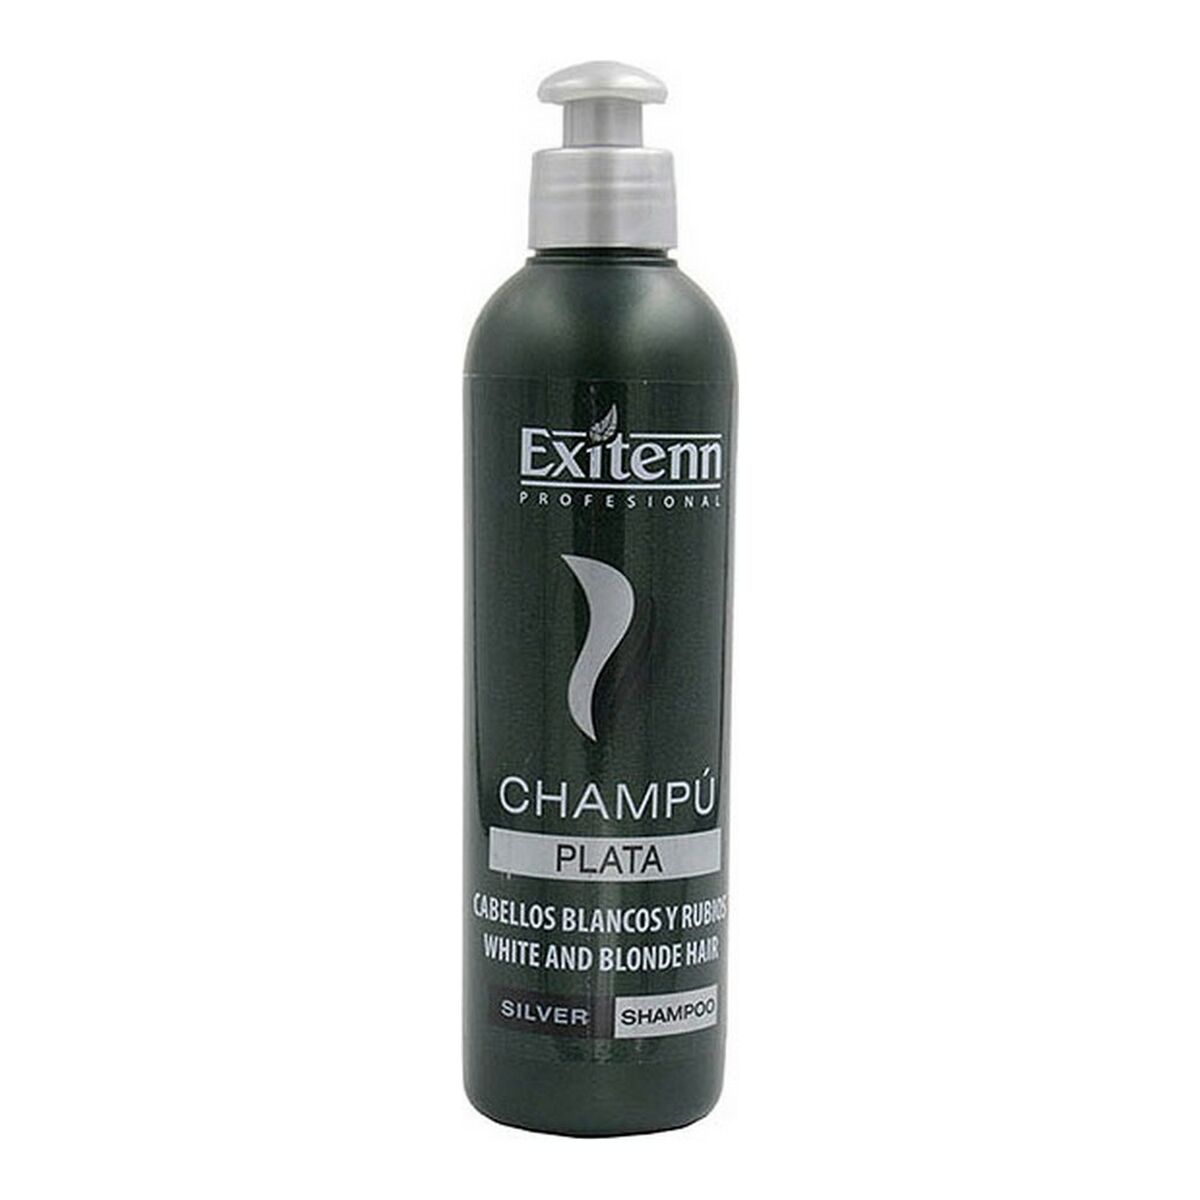 Șampon pentru Păr Blond sau Cărunt Exitenn (250 ml)